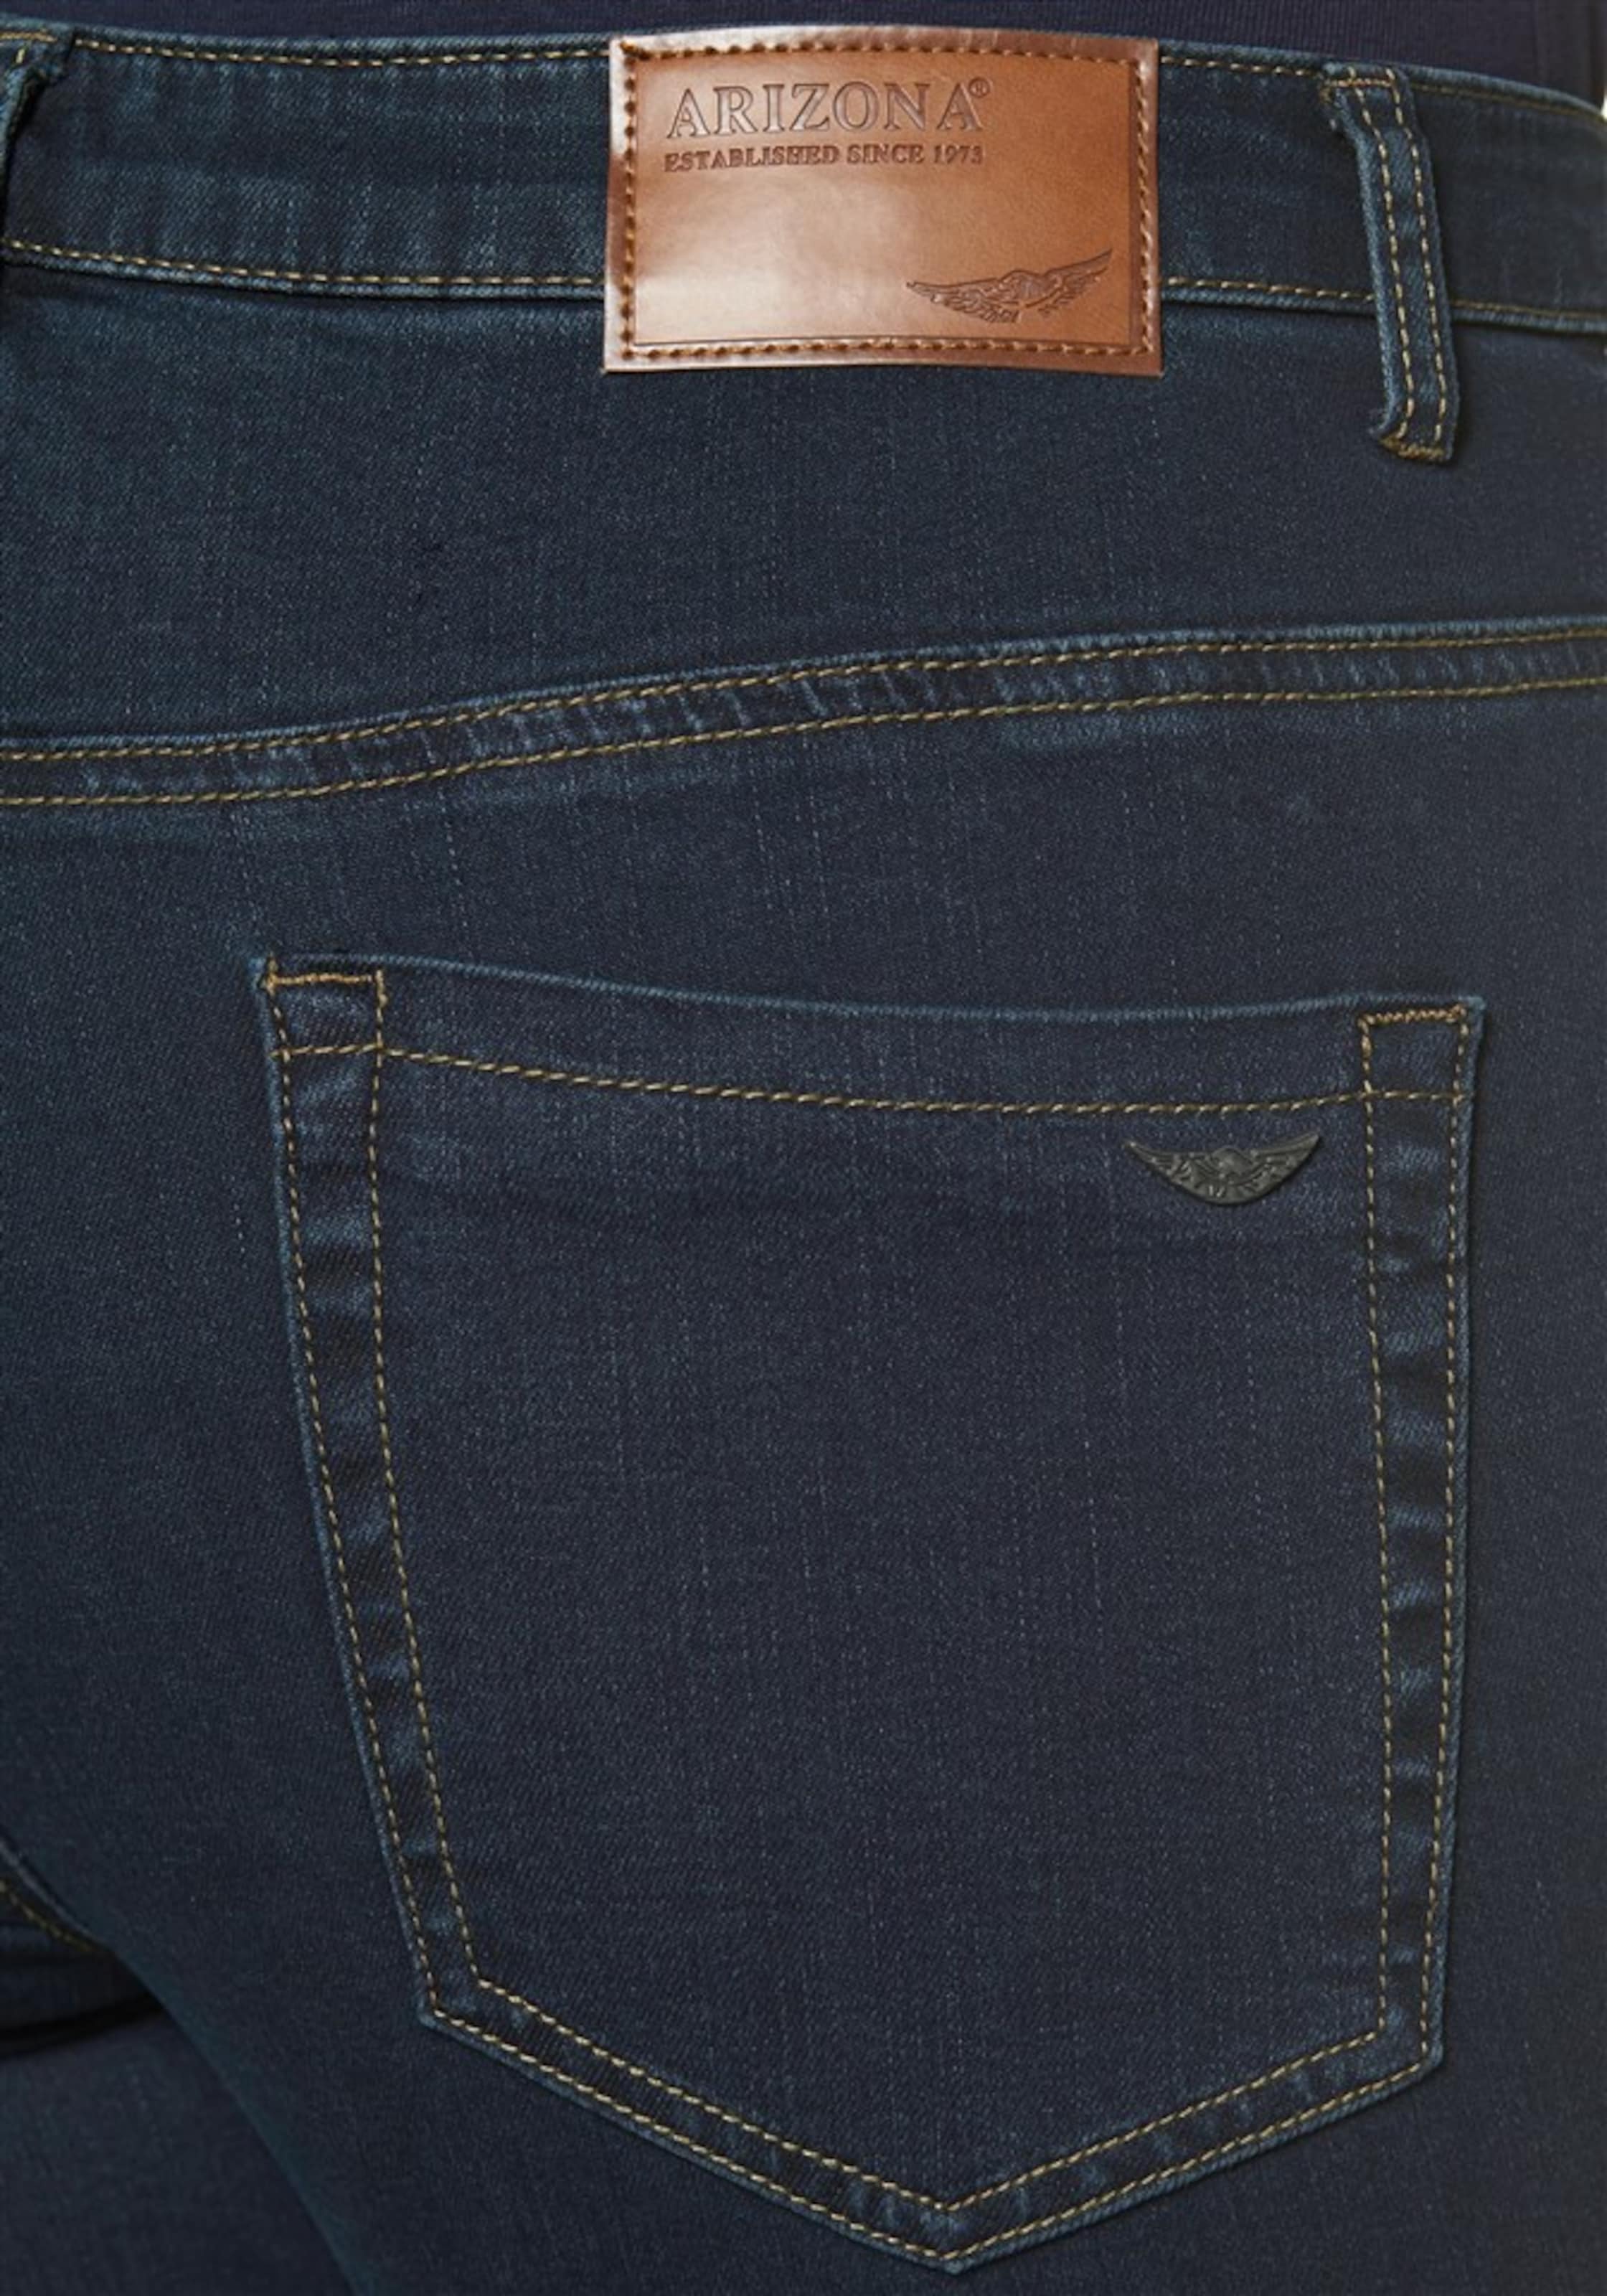 Frauen Jeans ARIZONA 5-Pocket-Jeans 'Gerade-Form mit komfortabler Leibhöhe' in Schwarz - VZ83568